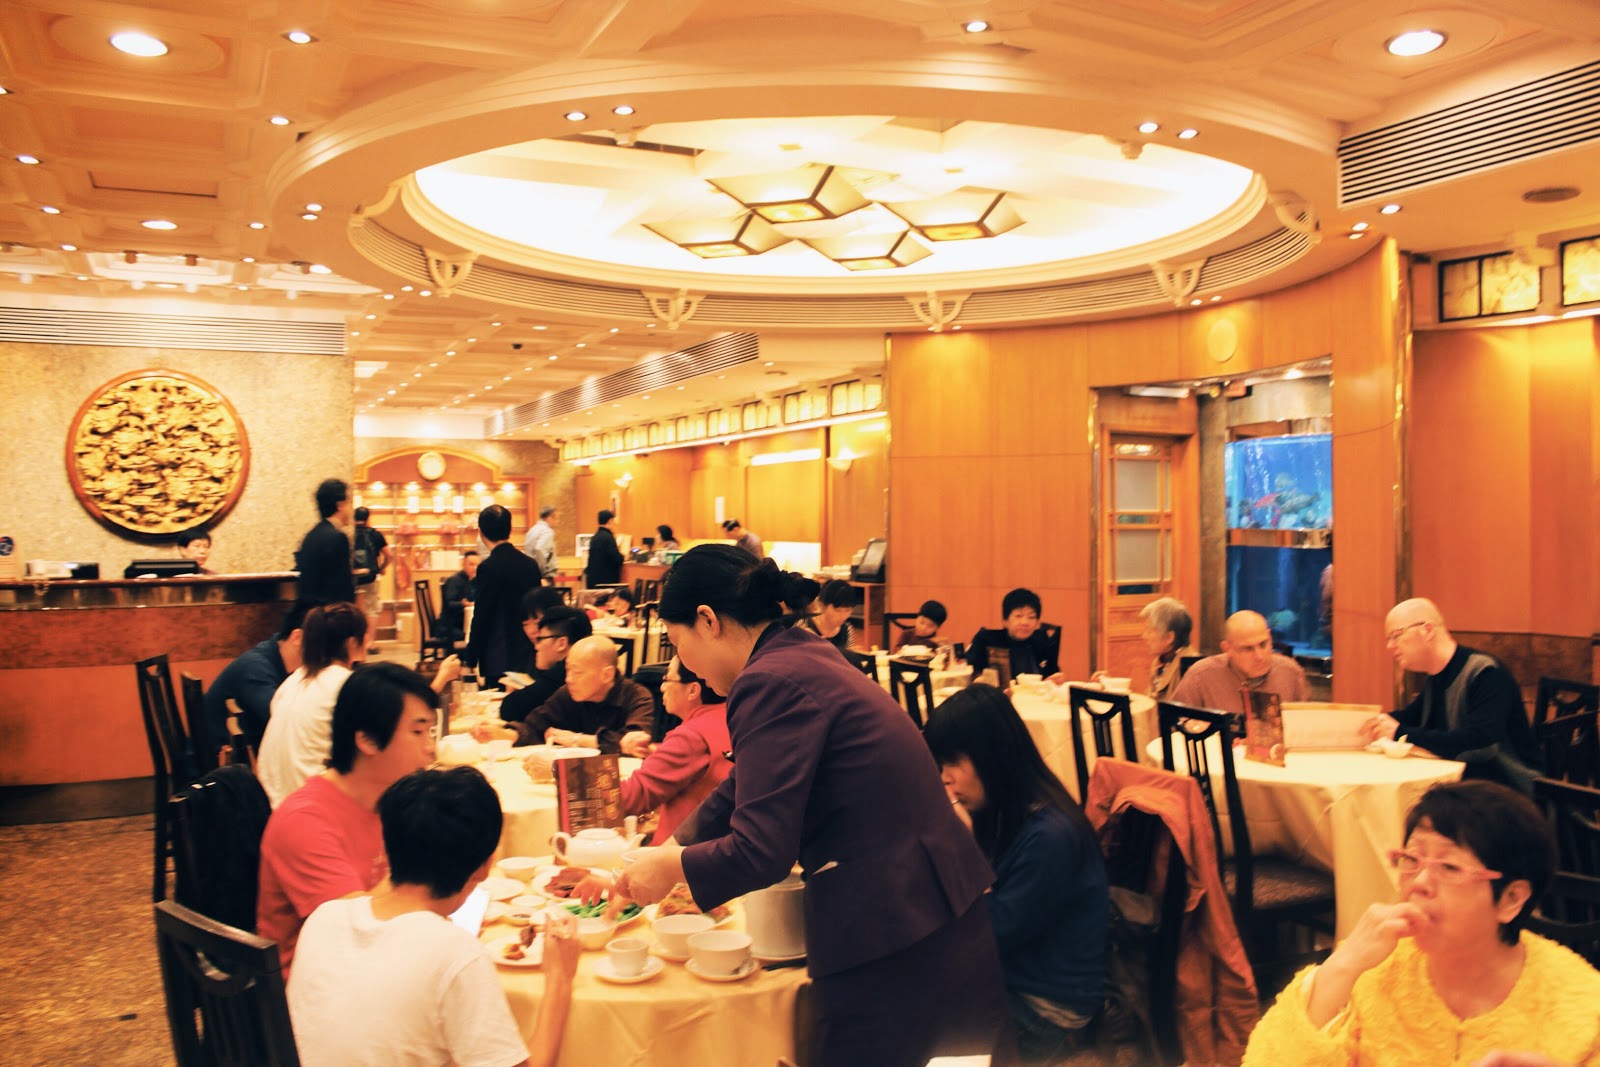 鏞記酒家 Yung Kee Restaurant @ 香港中環 Central, Hong Kong